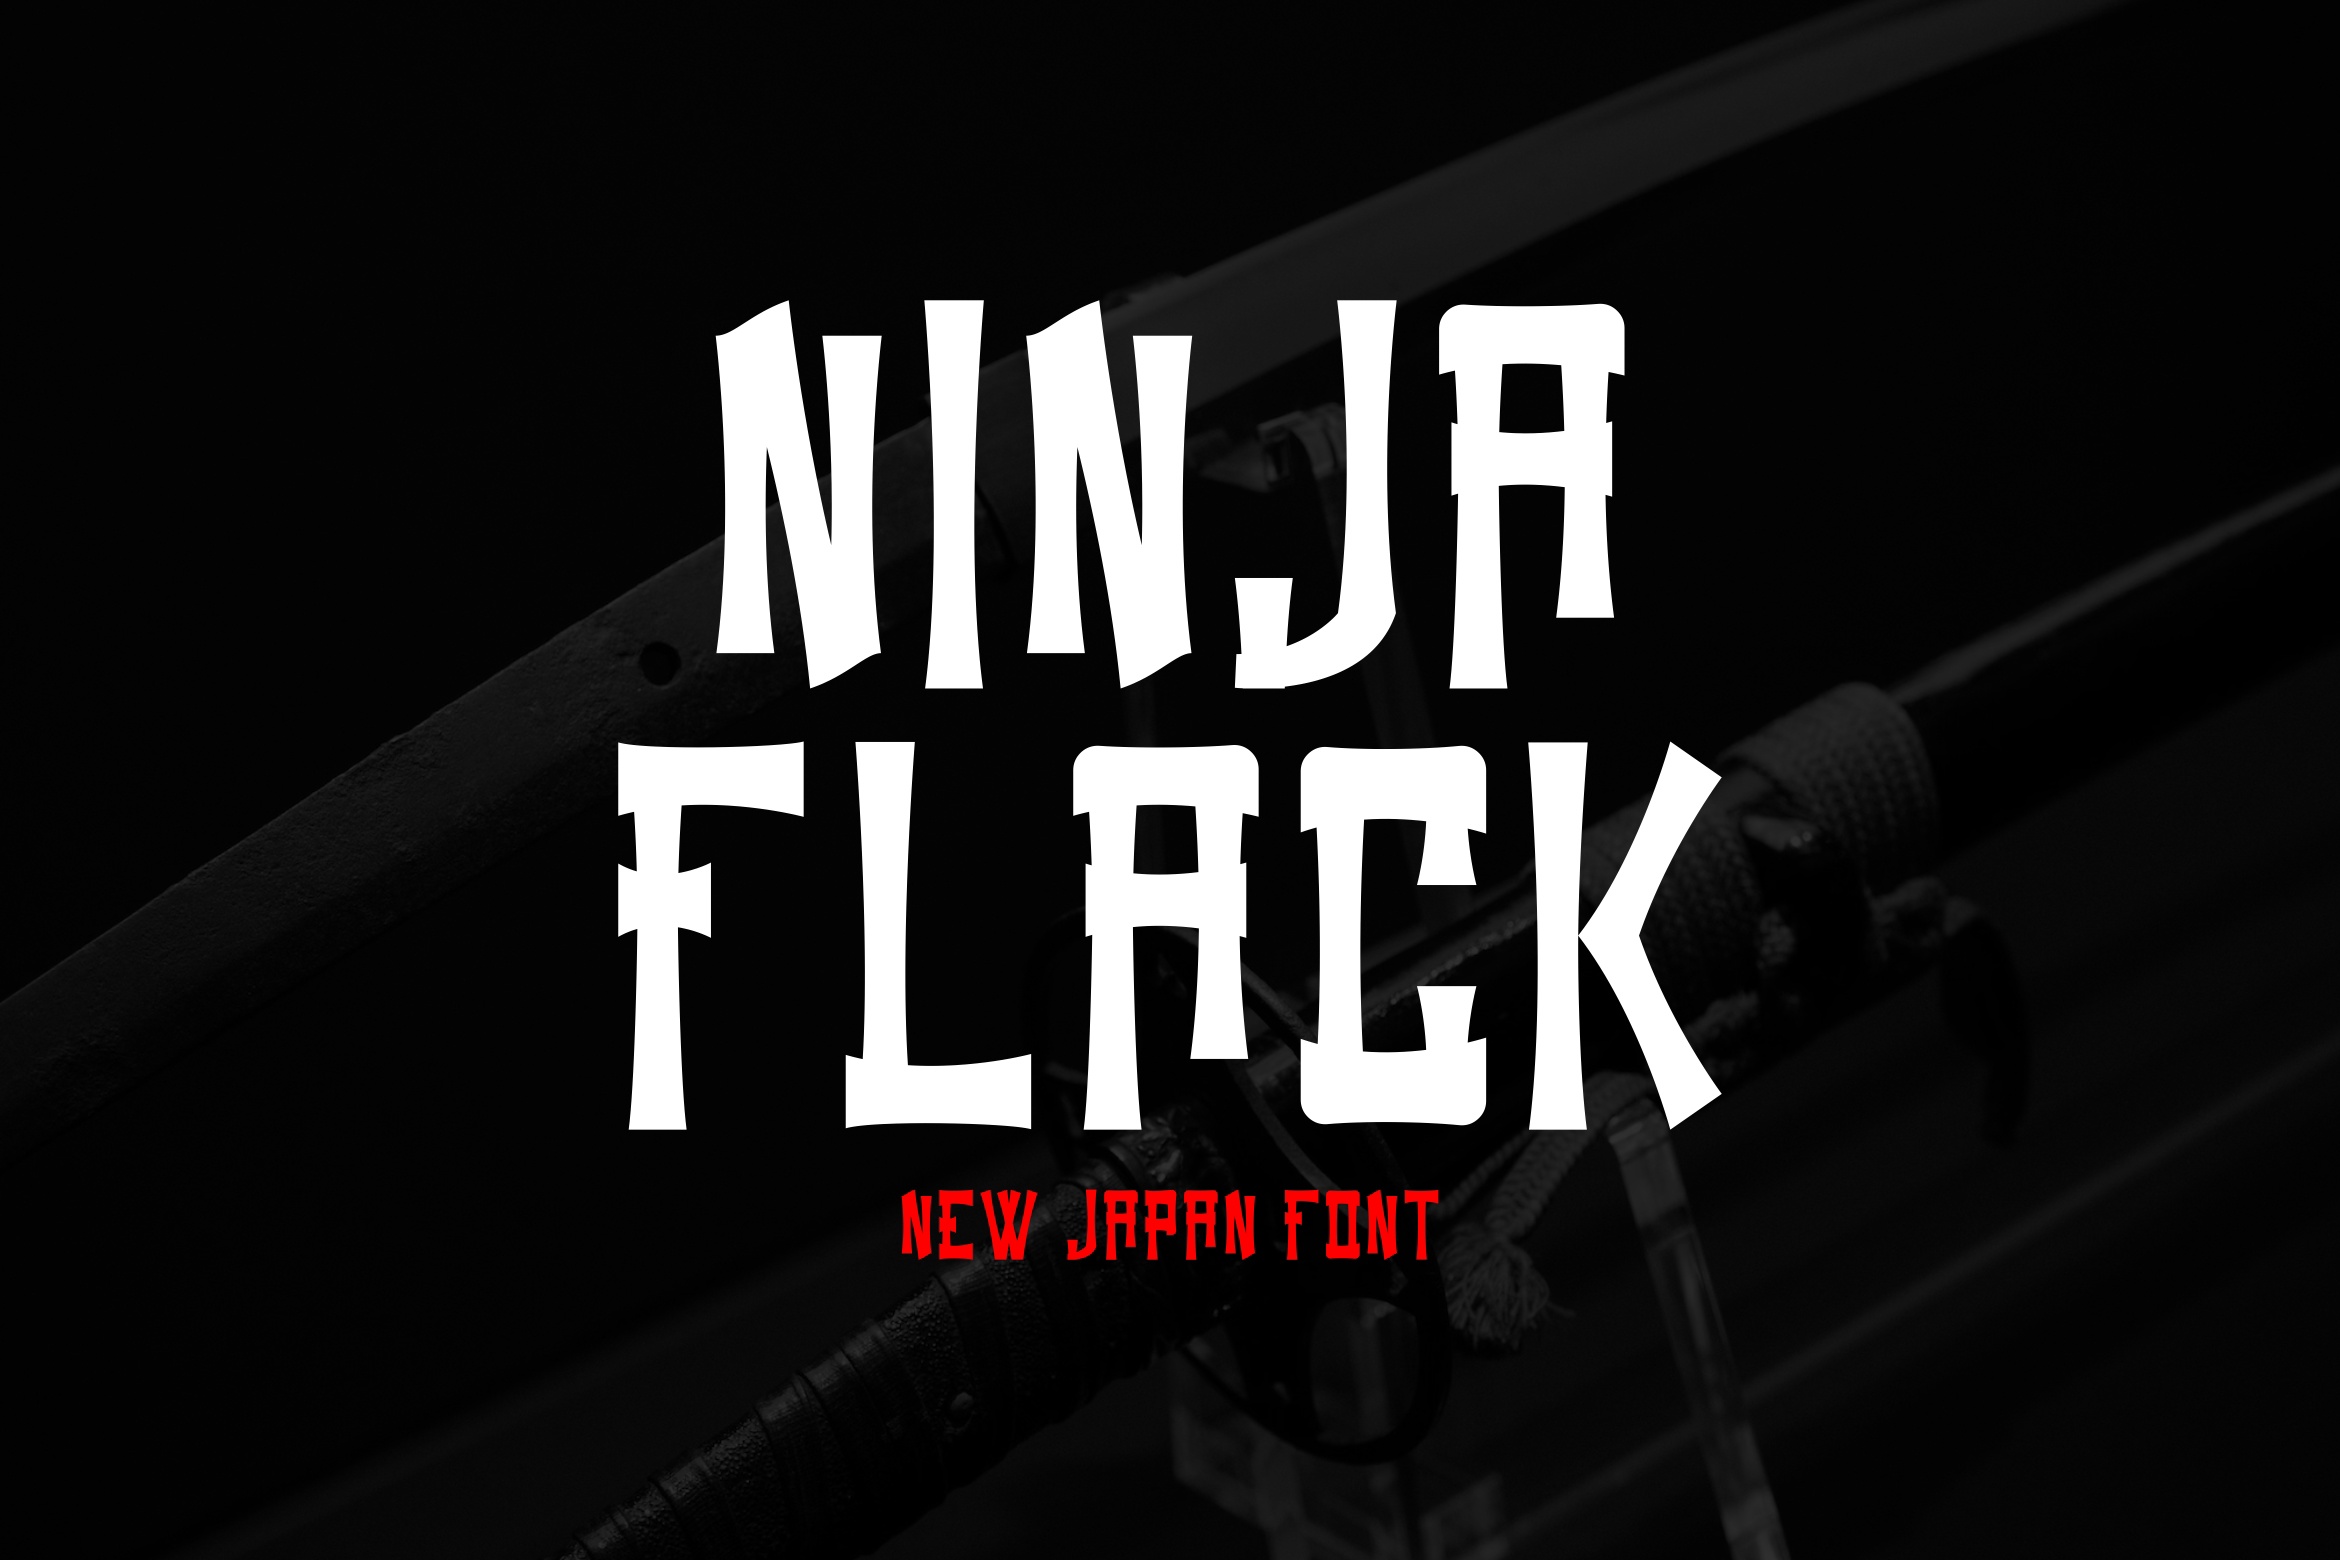 Ninja Flack